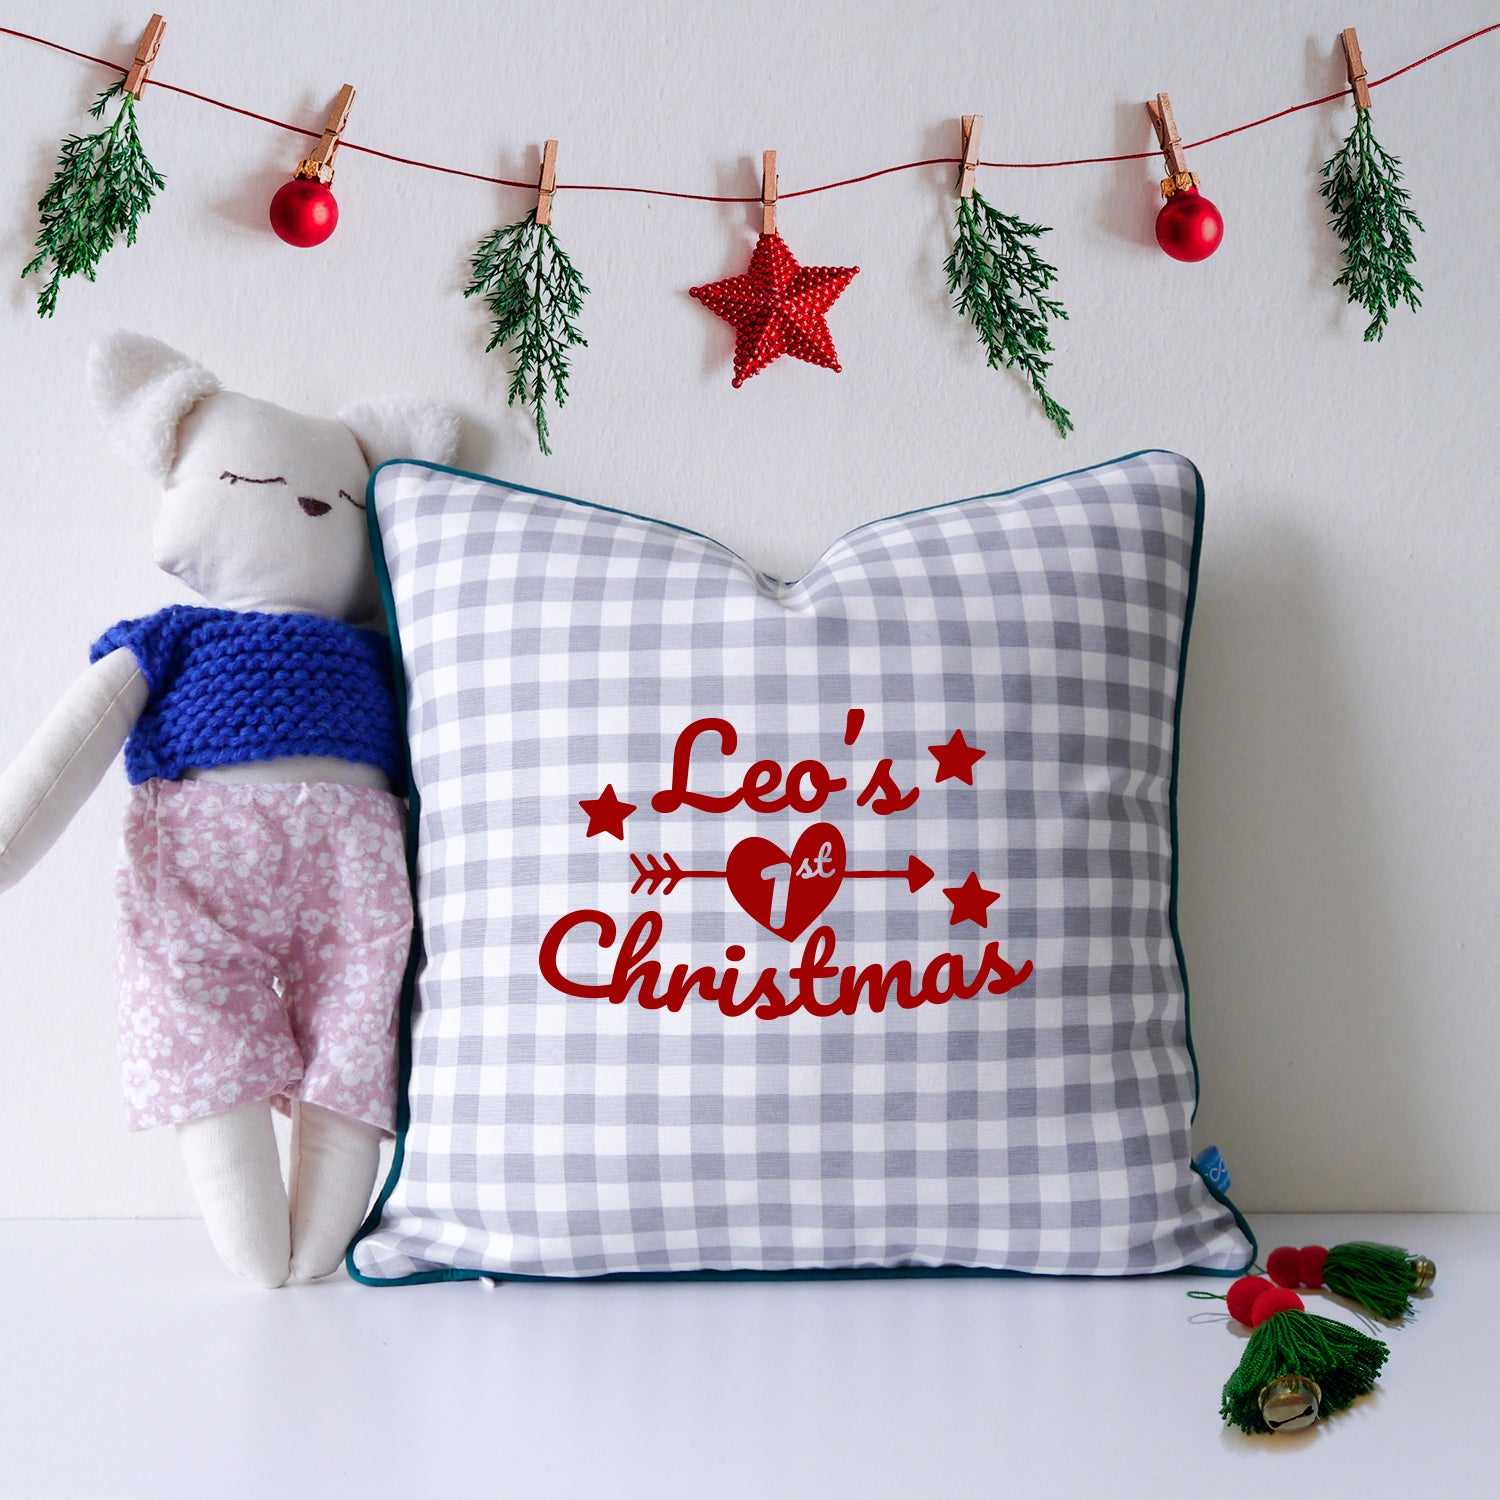 Personalised Plaid Pattern Christmas Cushion